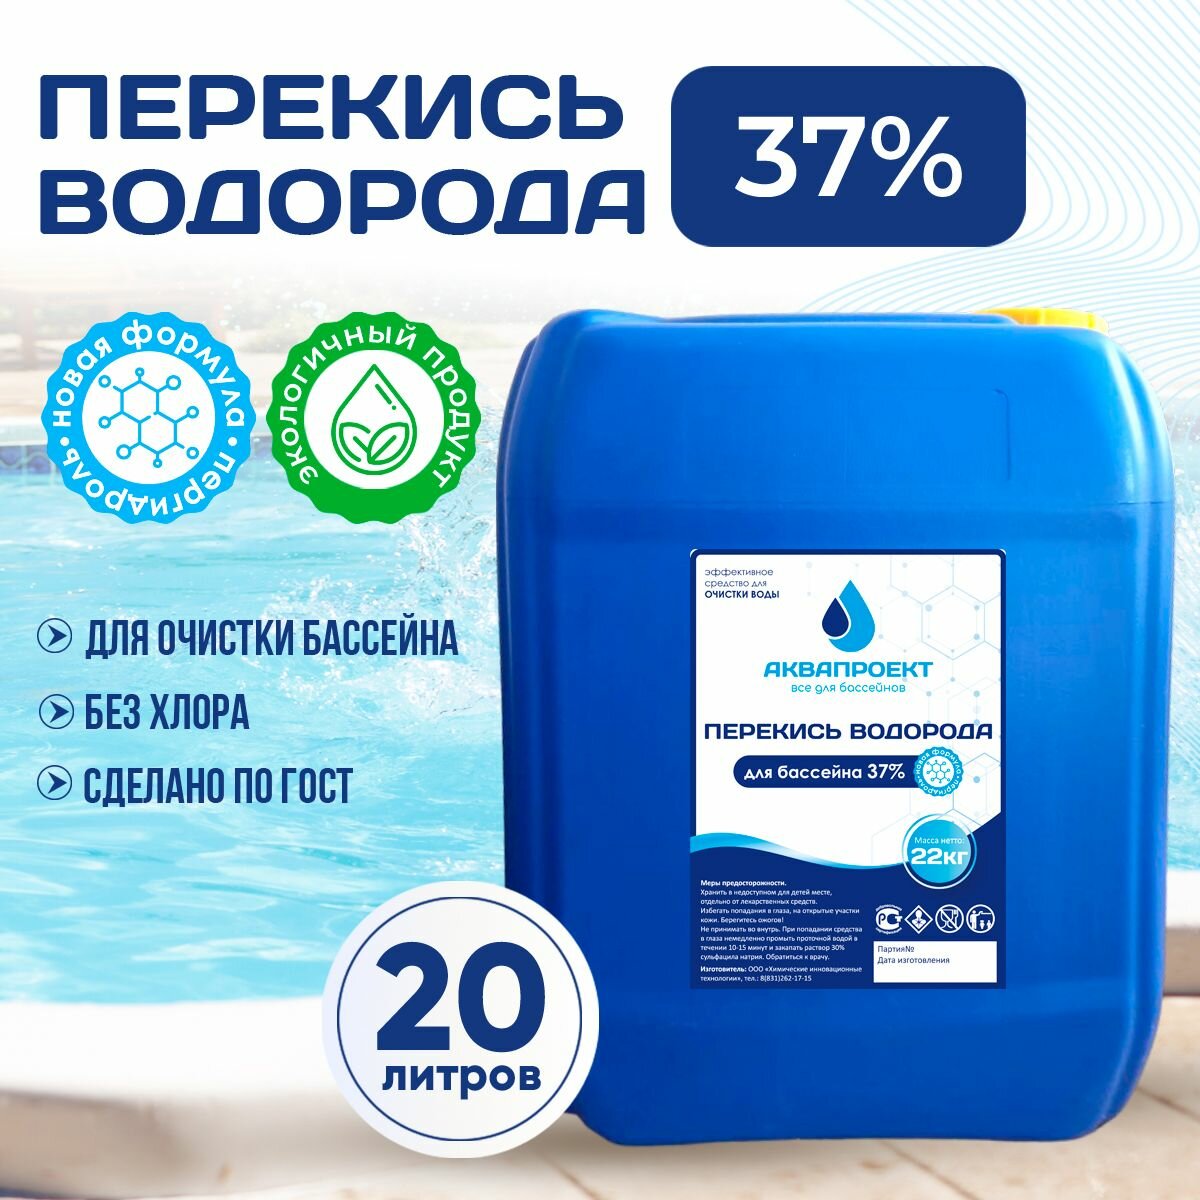 Перекись водорода для бассейна канистра 20 литров / Пероксид 37% для очистки воды / Химия от цветения водорослей и плесени